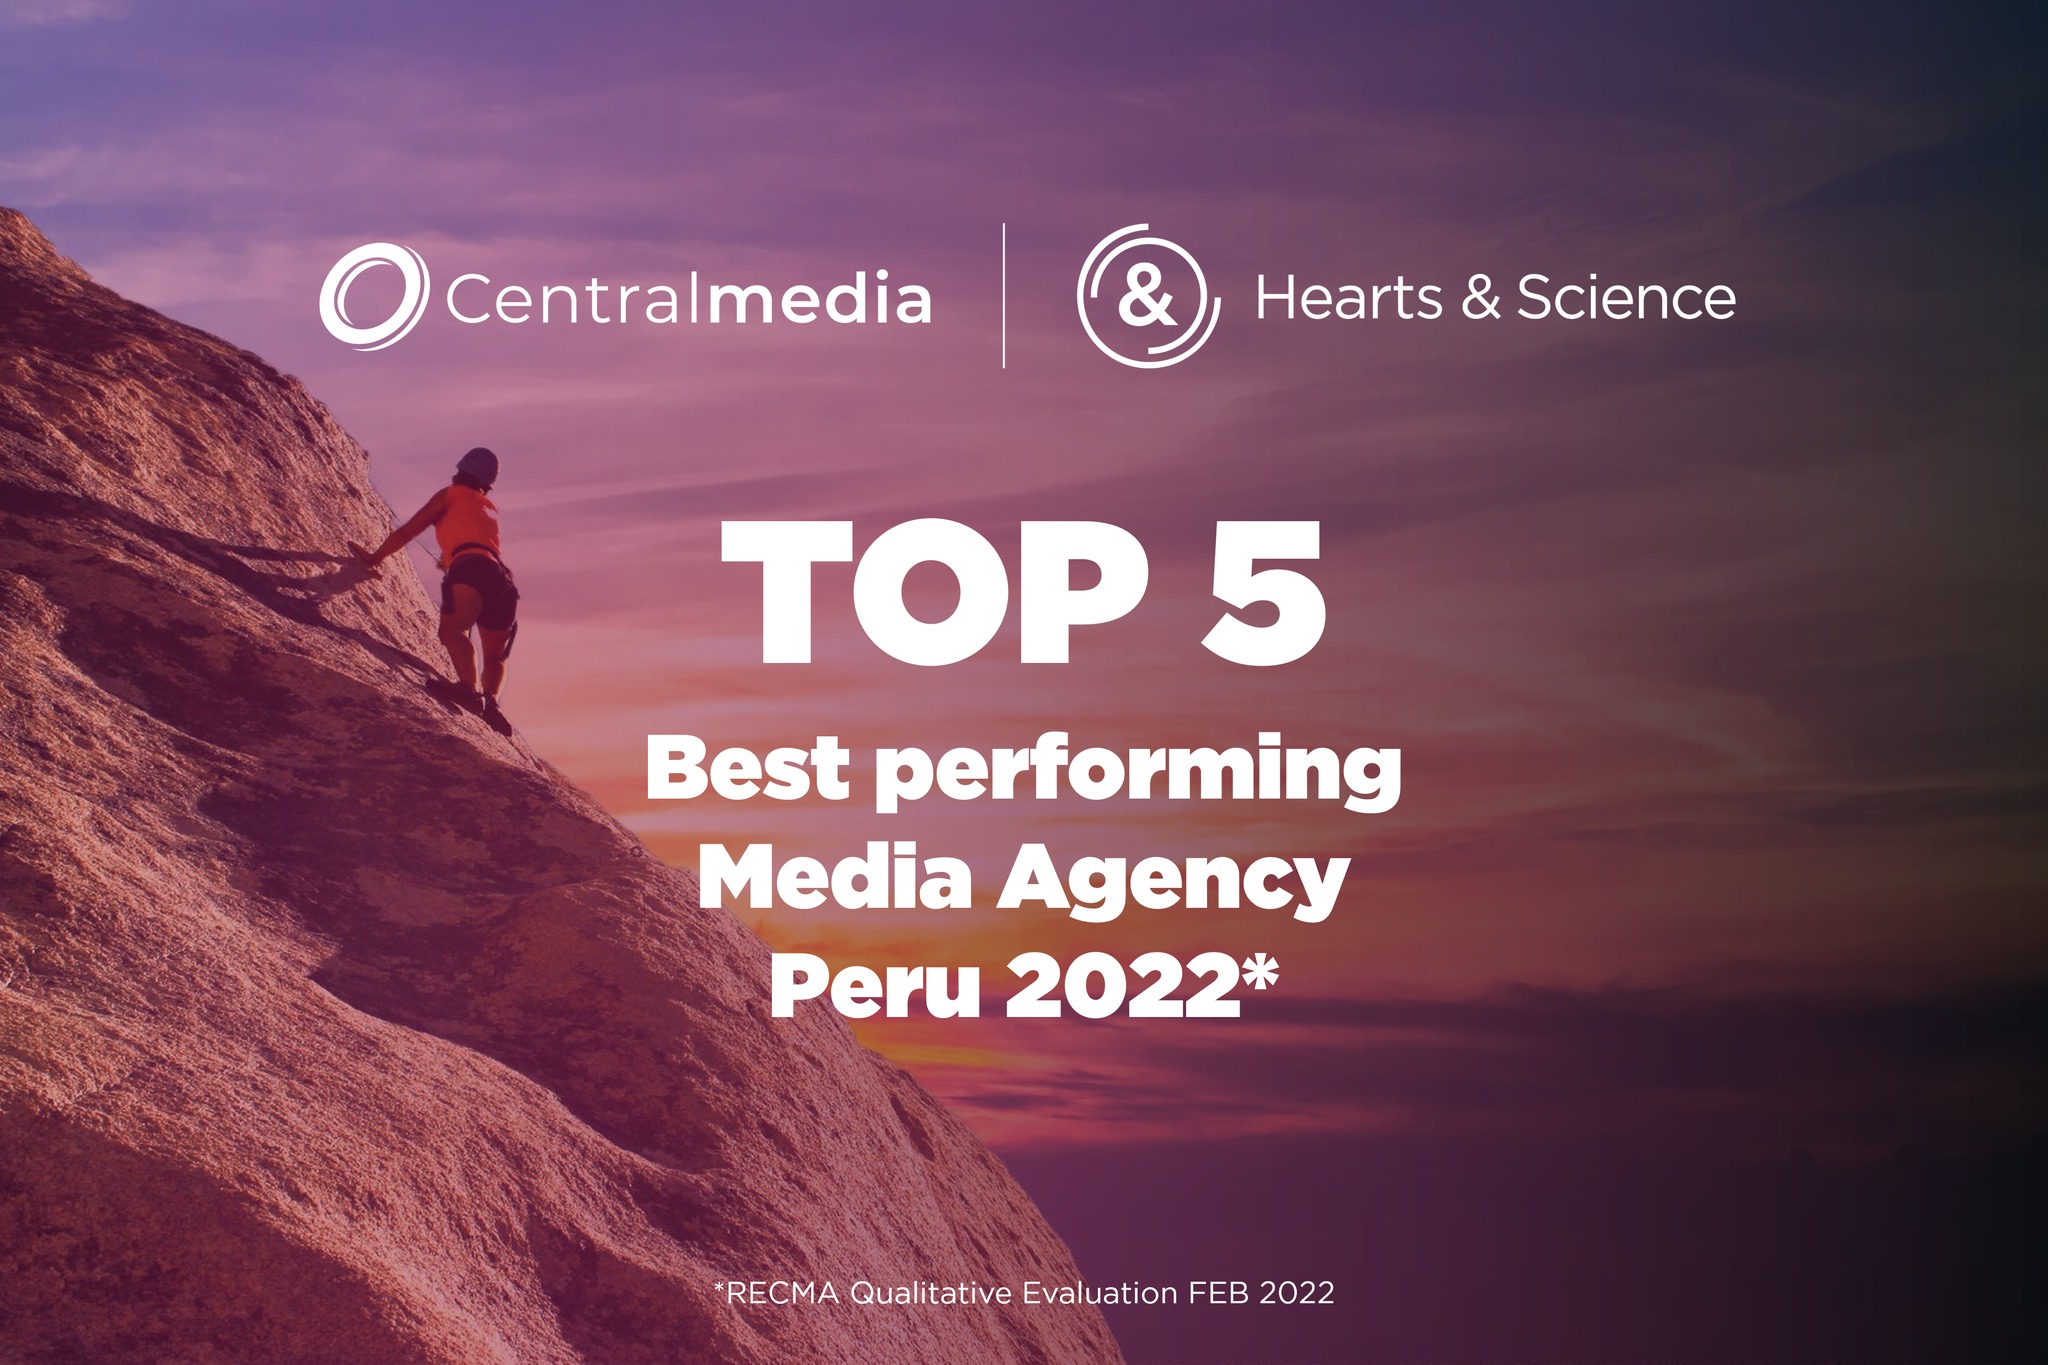 Centralmedia | Hearts & Science escala al TOP 5 de Agencias de Medios en Perú